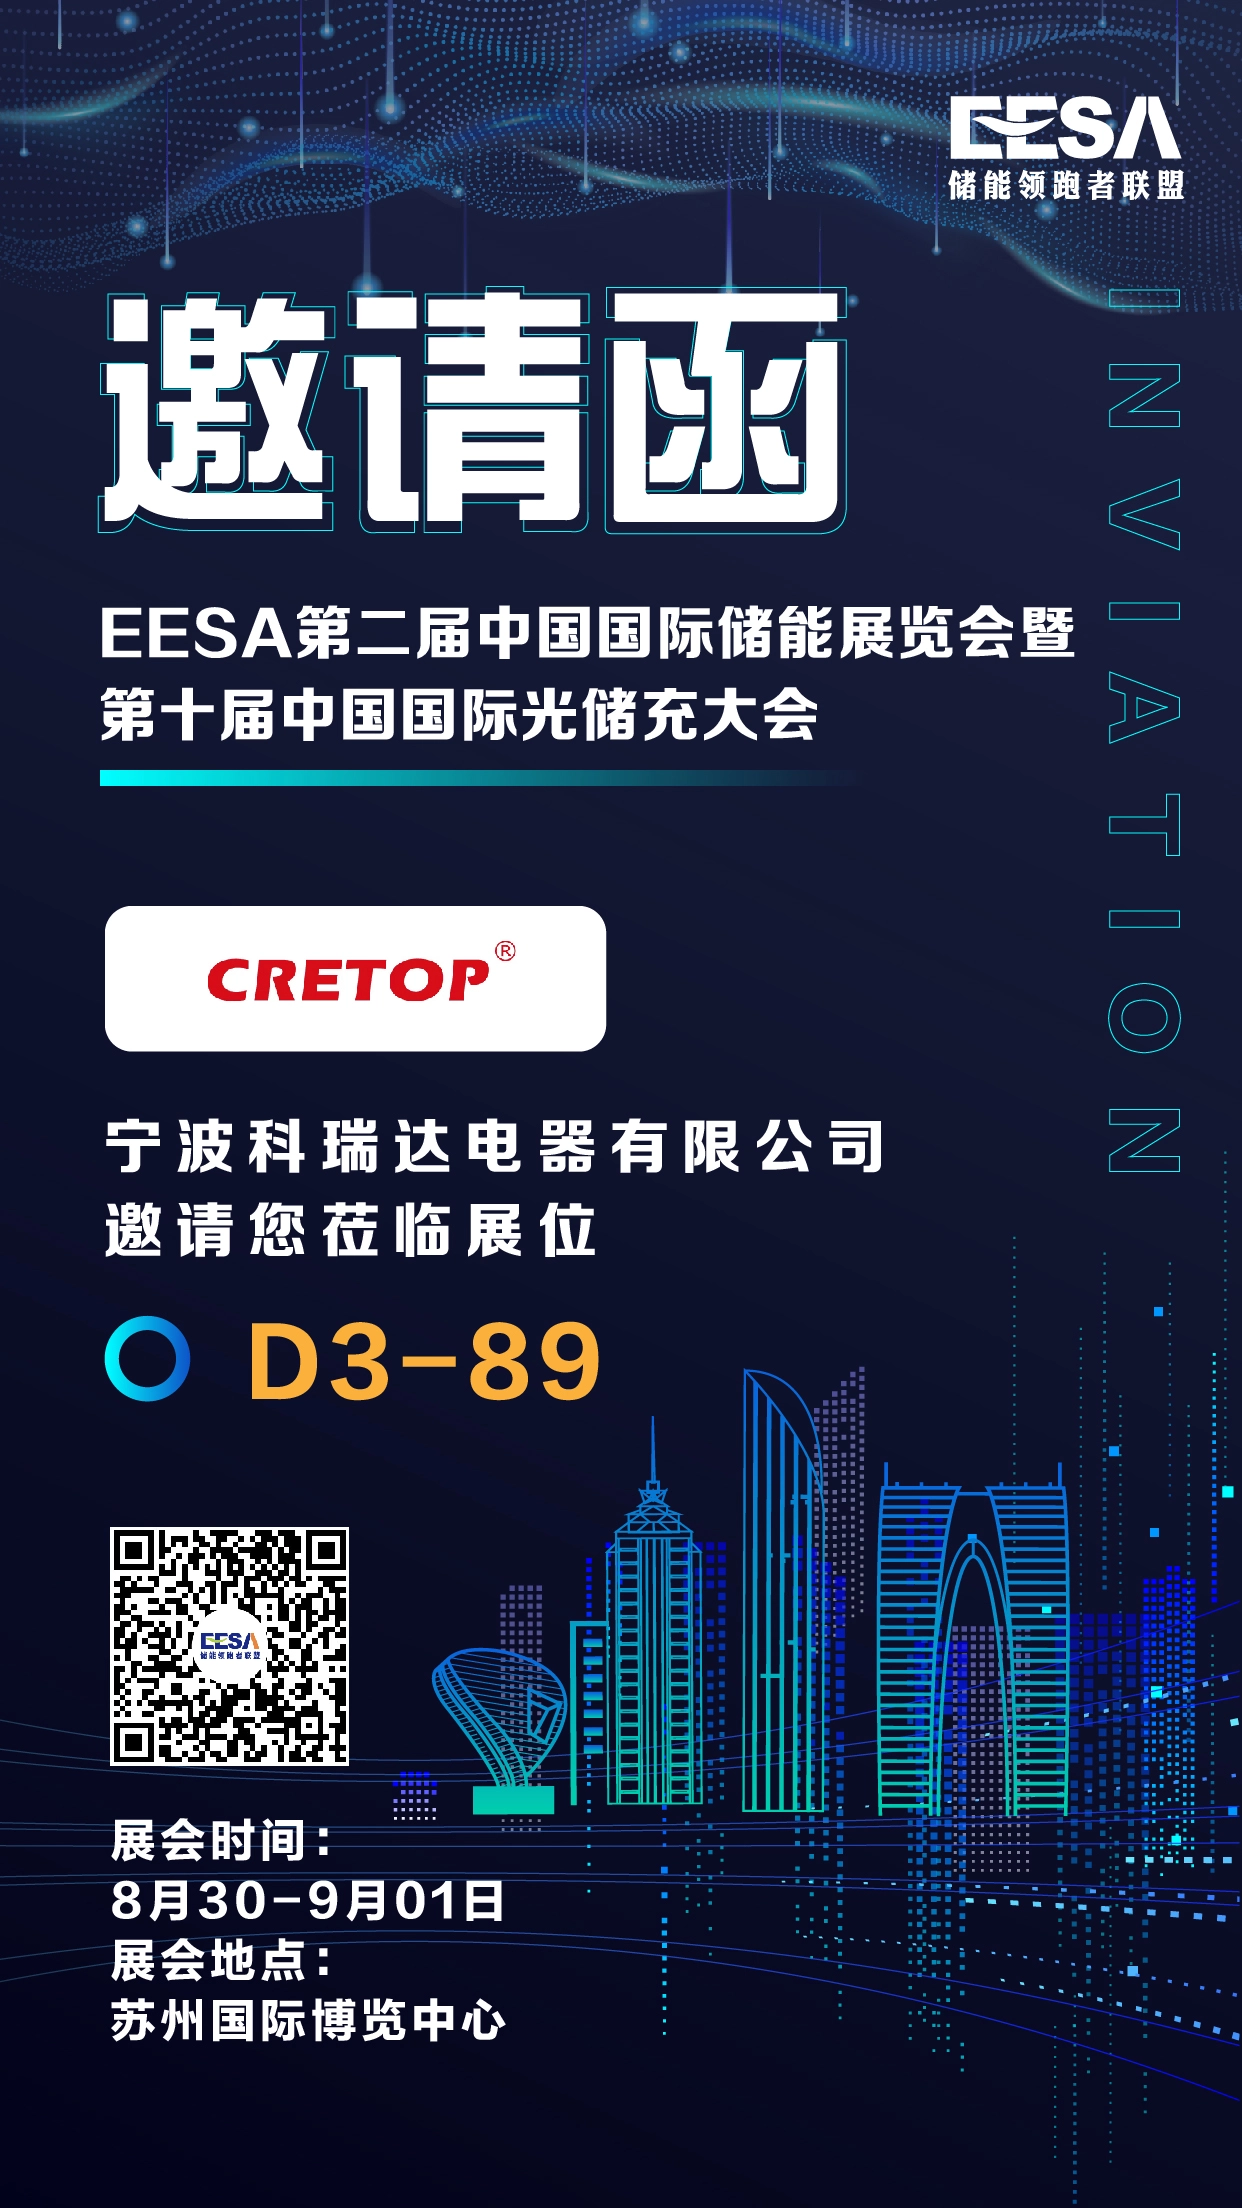 คำเชิญของ Suzhou EESA